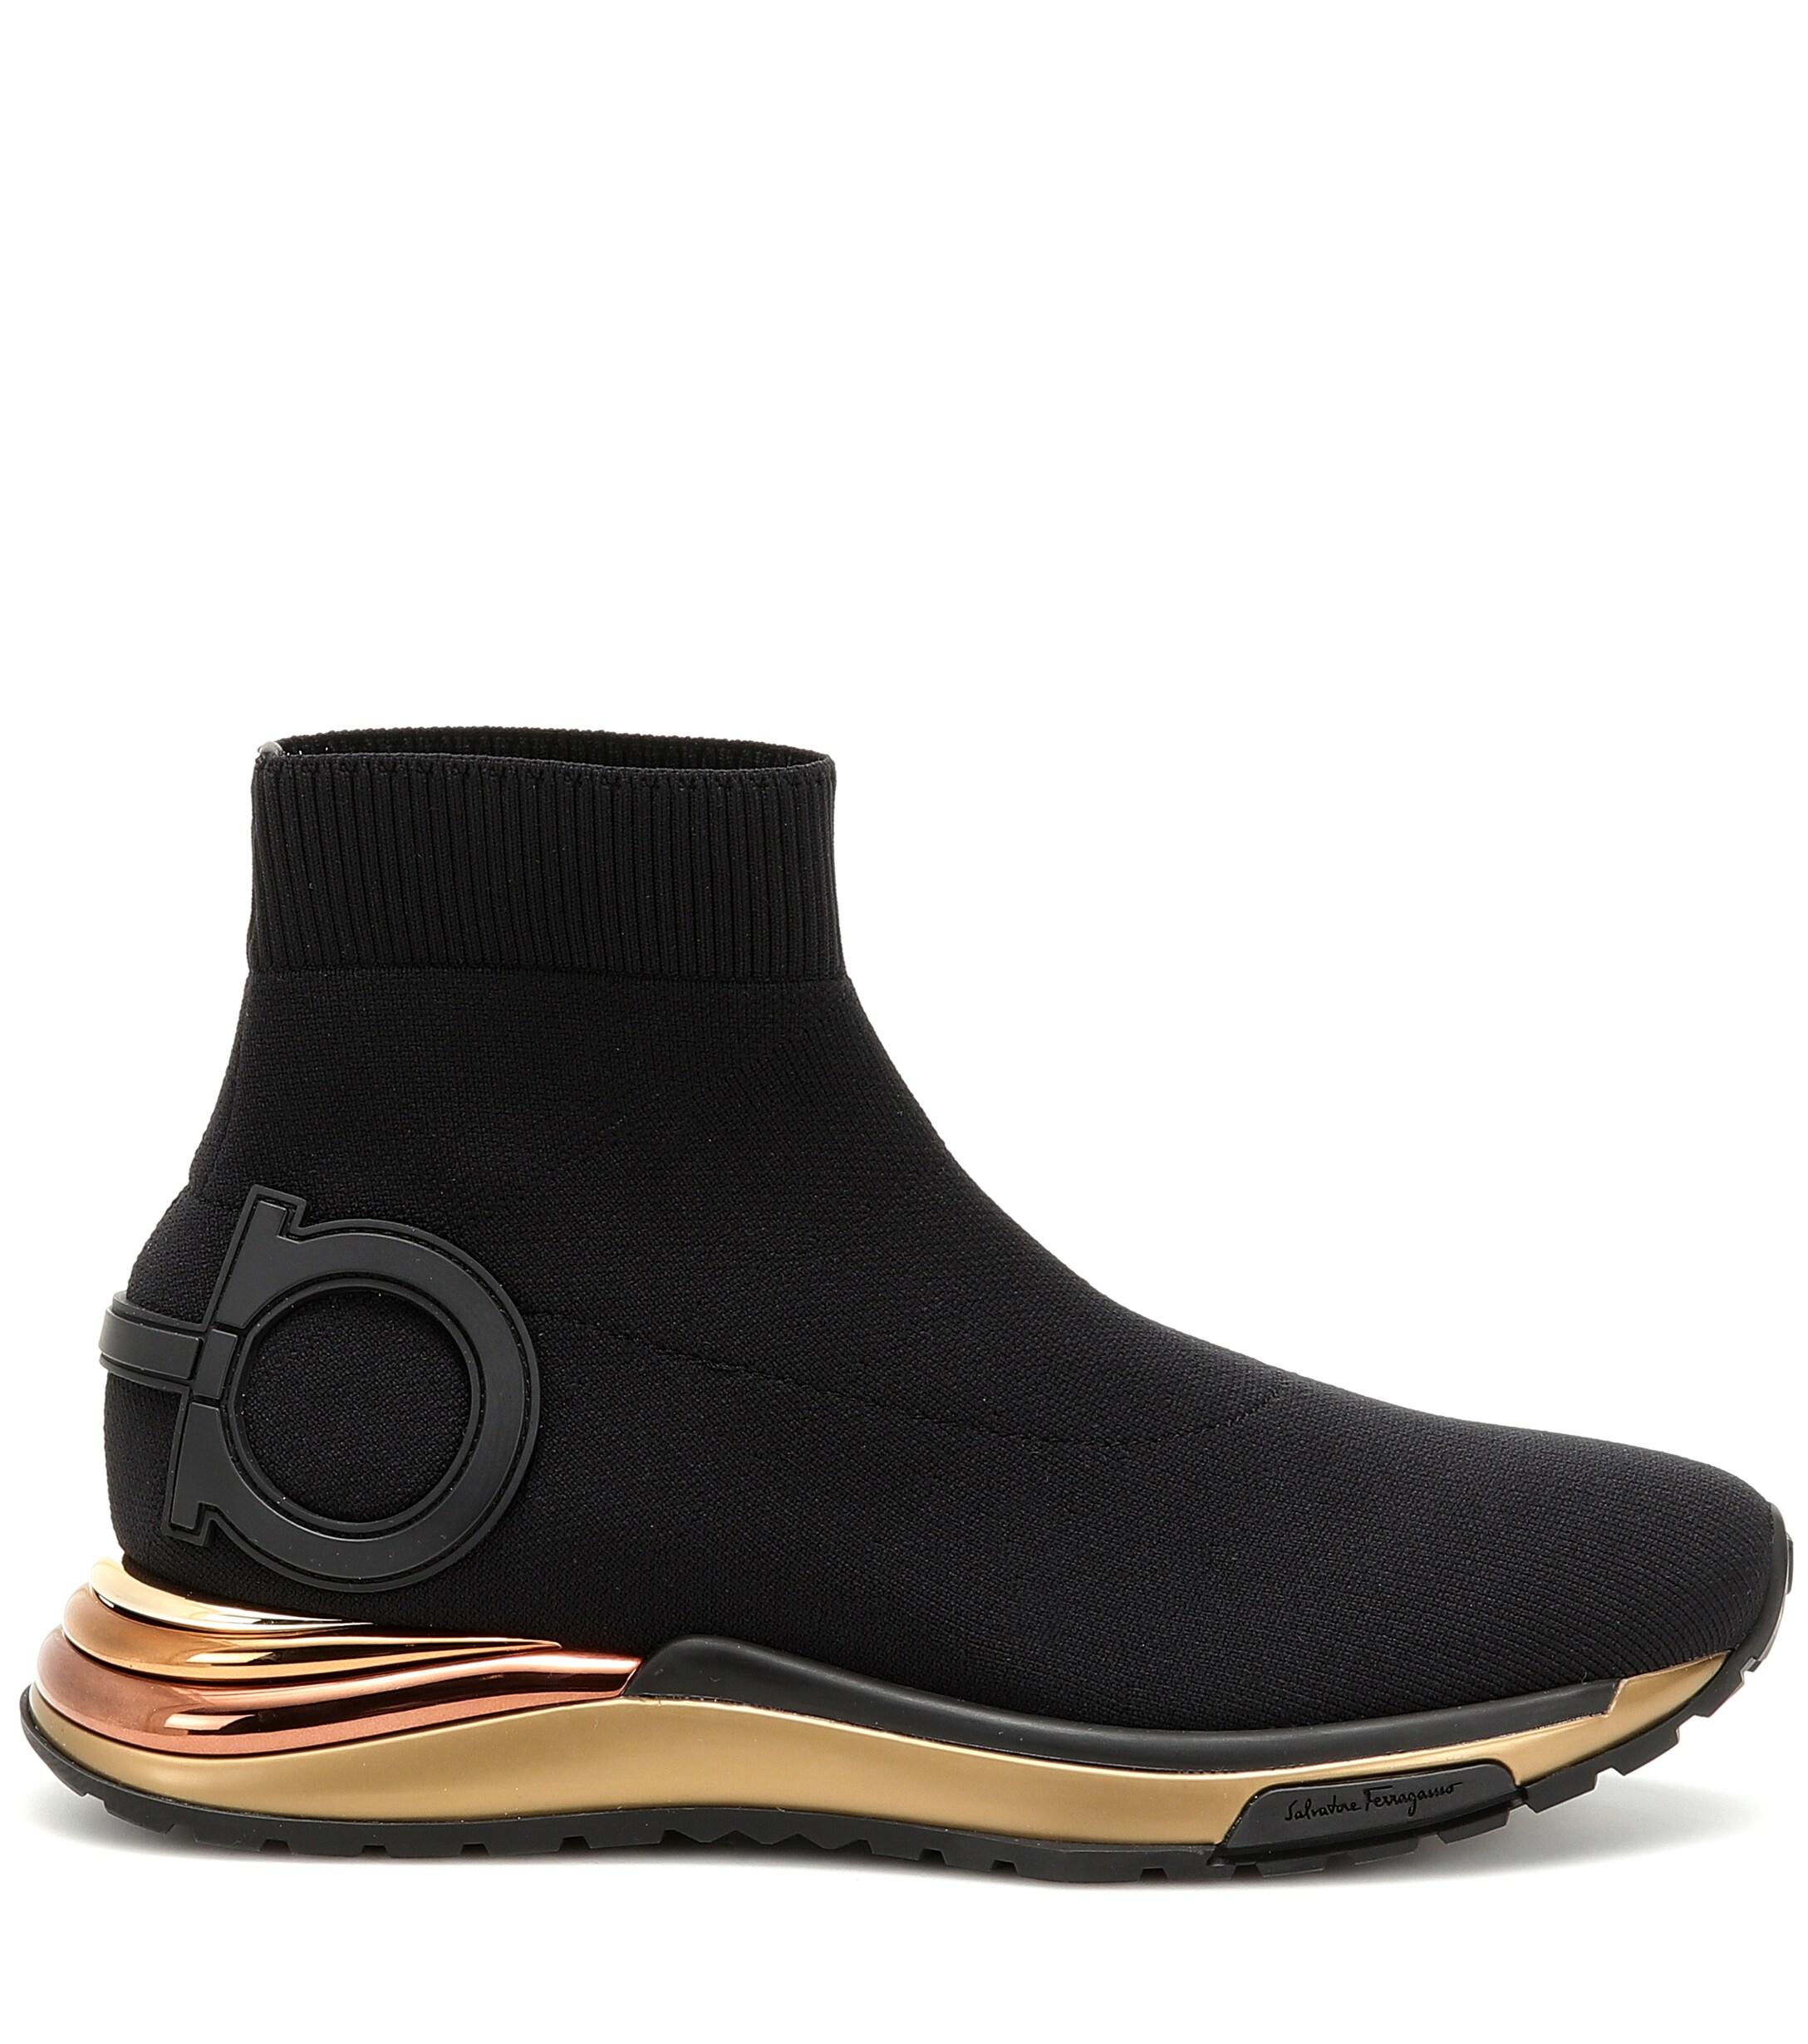 Ferragamo Gardena Sock Sneakers in Nero (Black) - Save 41% - Lyst